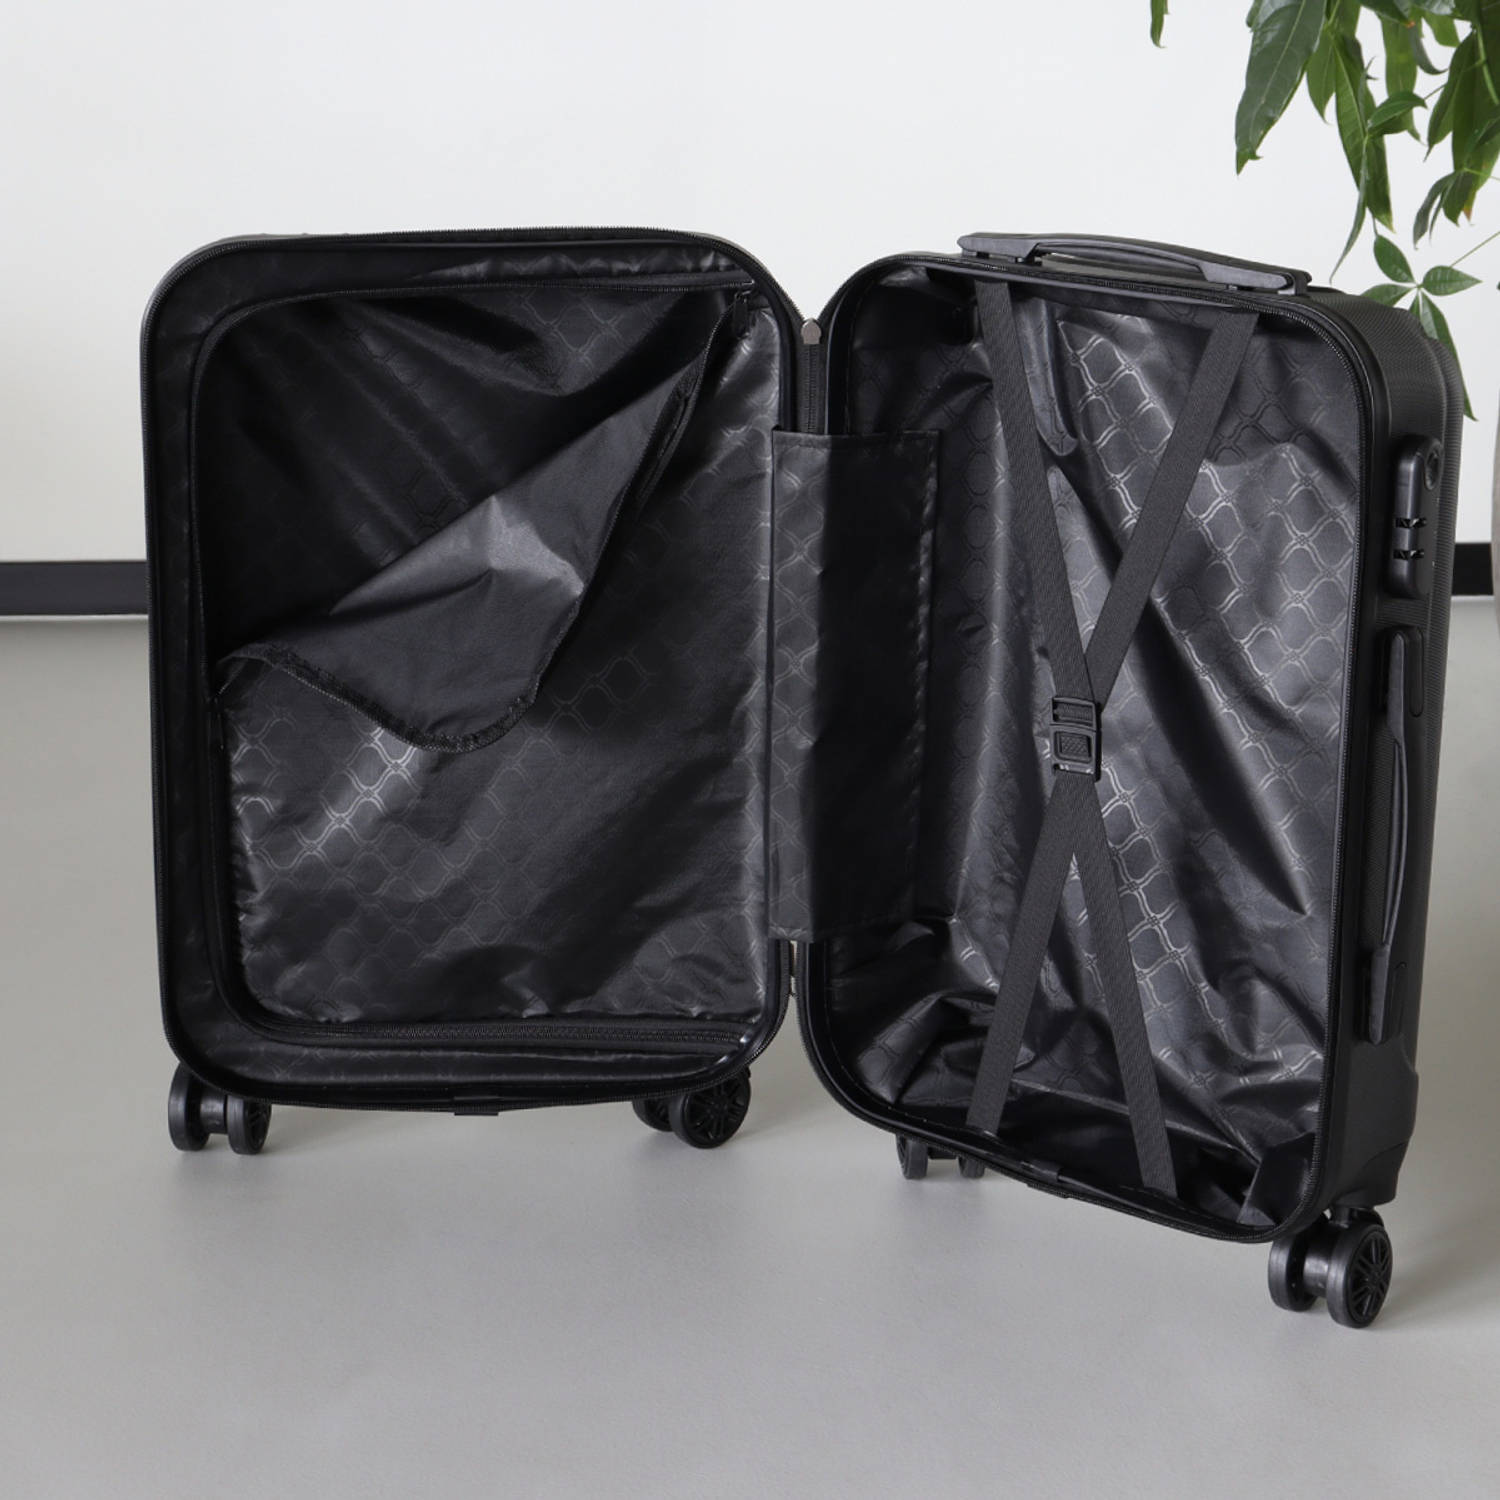 Handbagage koffer 55cm zilver 4 wielen trolley met pin slot